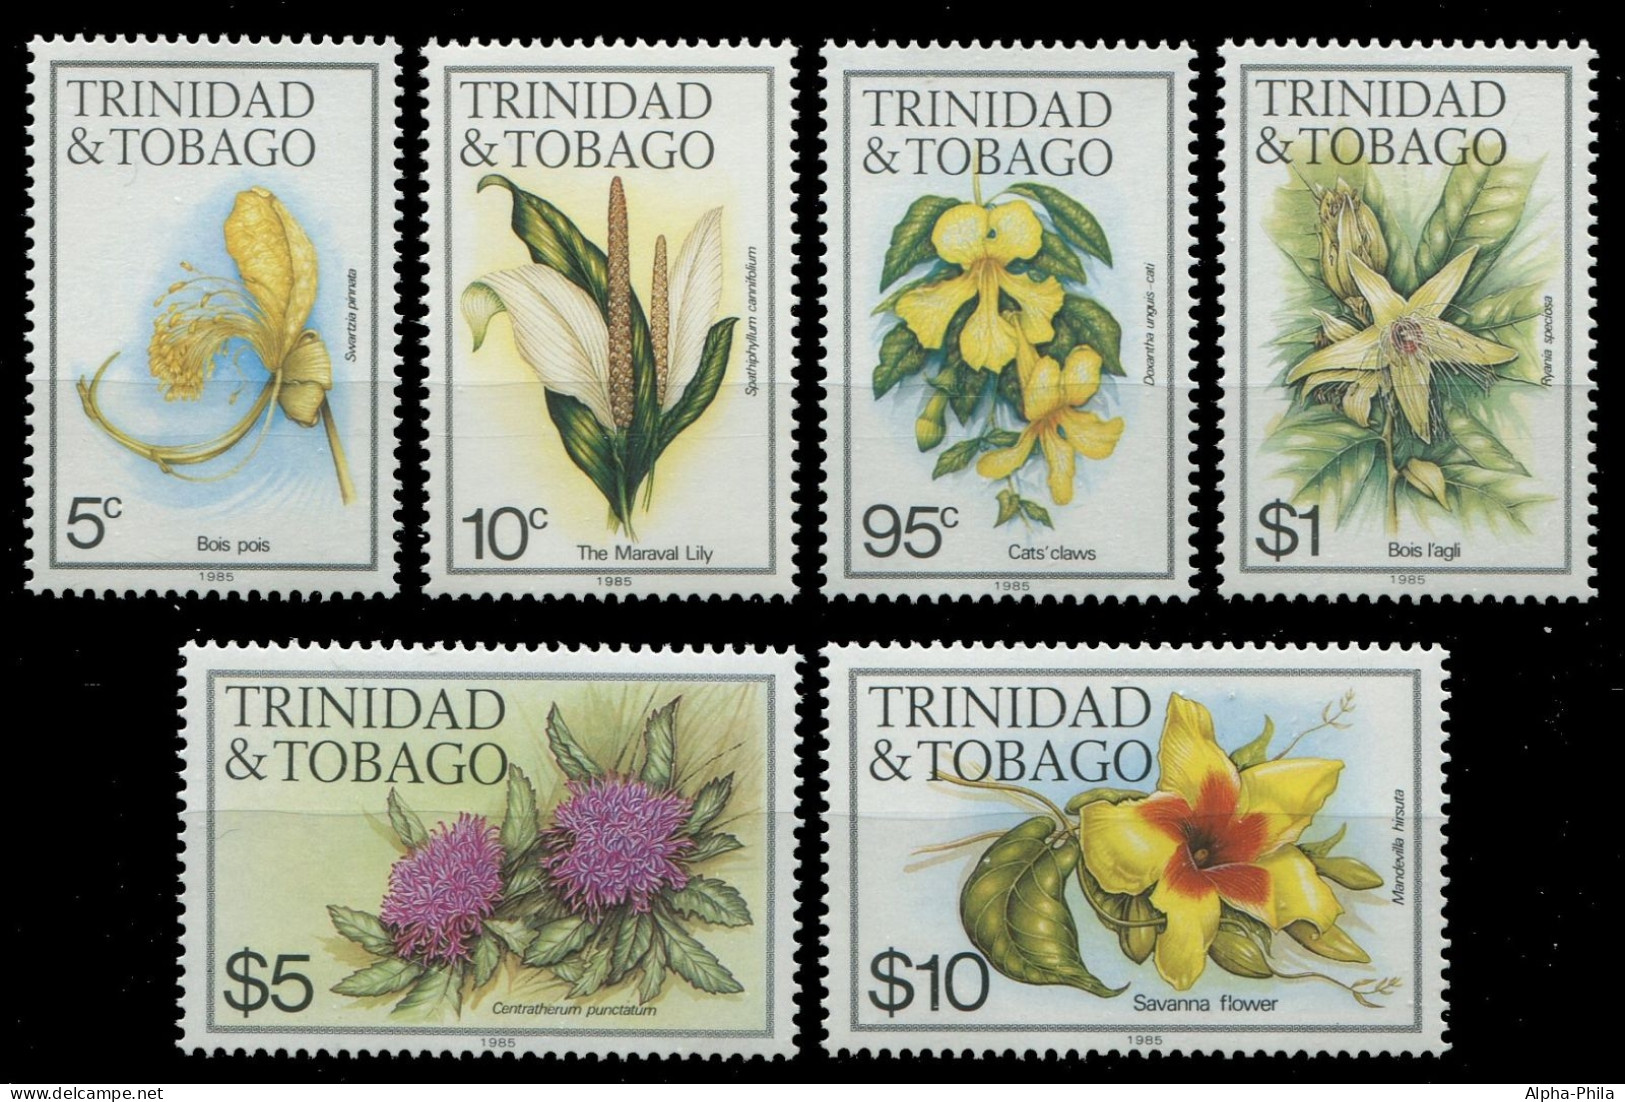 Trinidad & Tobago 1985 - Mi-Nr. 479-494 III ** - MNH - Blumen / Flowers - Trinidad & Tobago (1962-...)